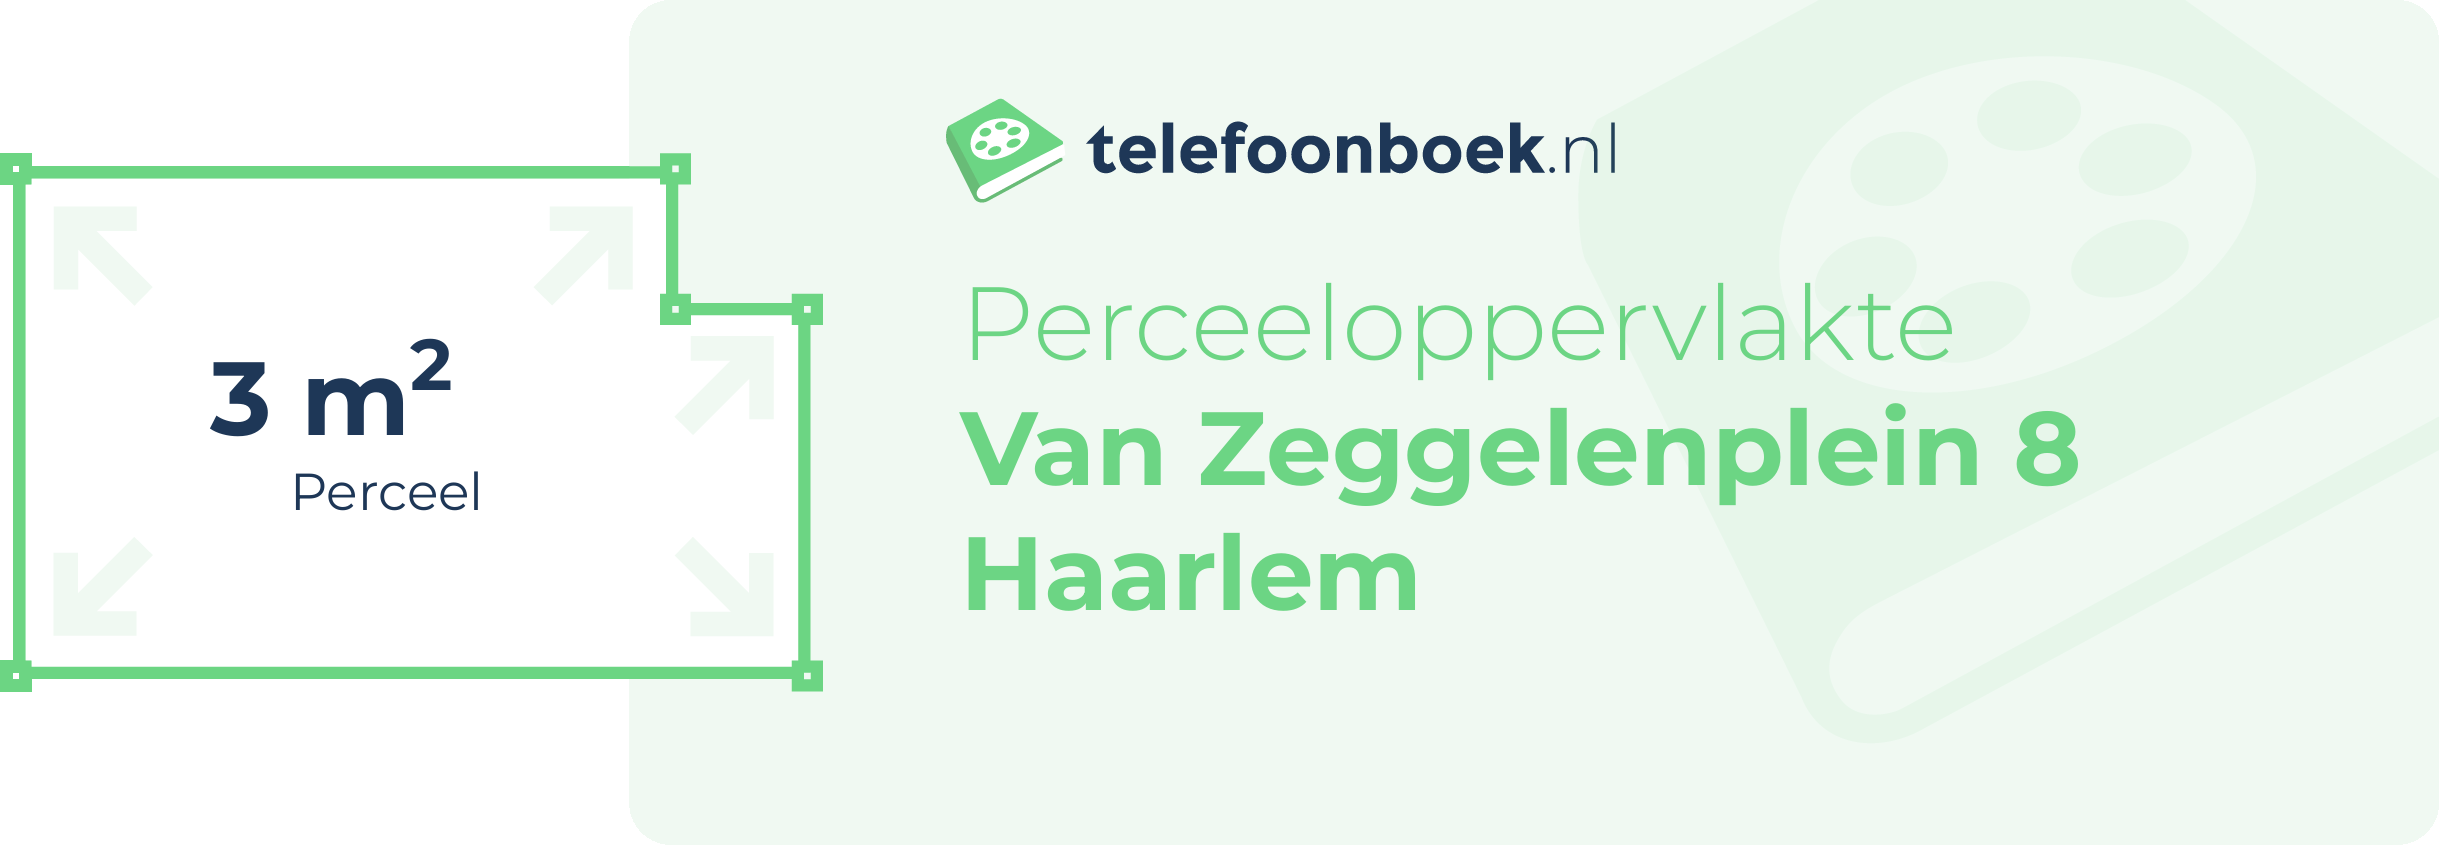 Perceeloppervlakte Van Zeggelenplein 8 Haarlem